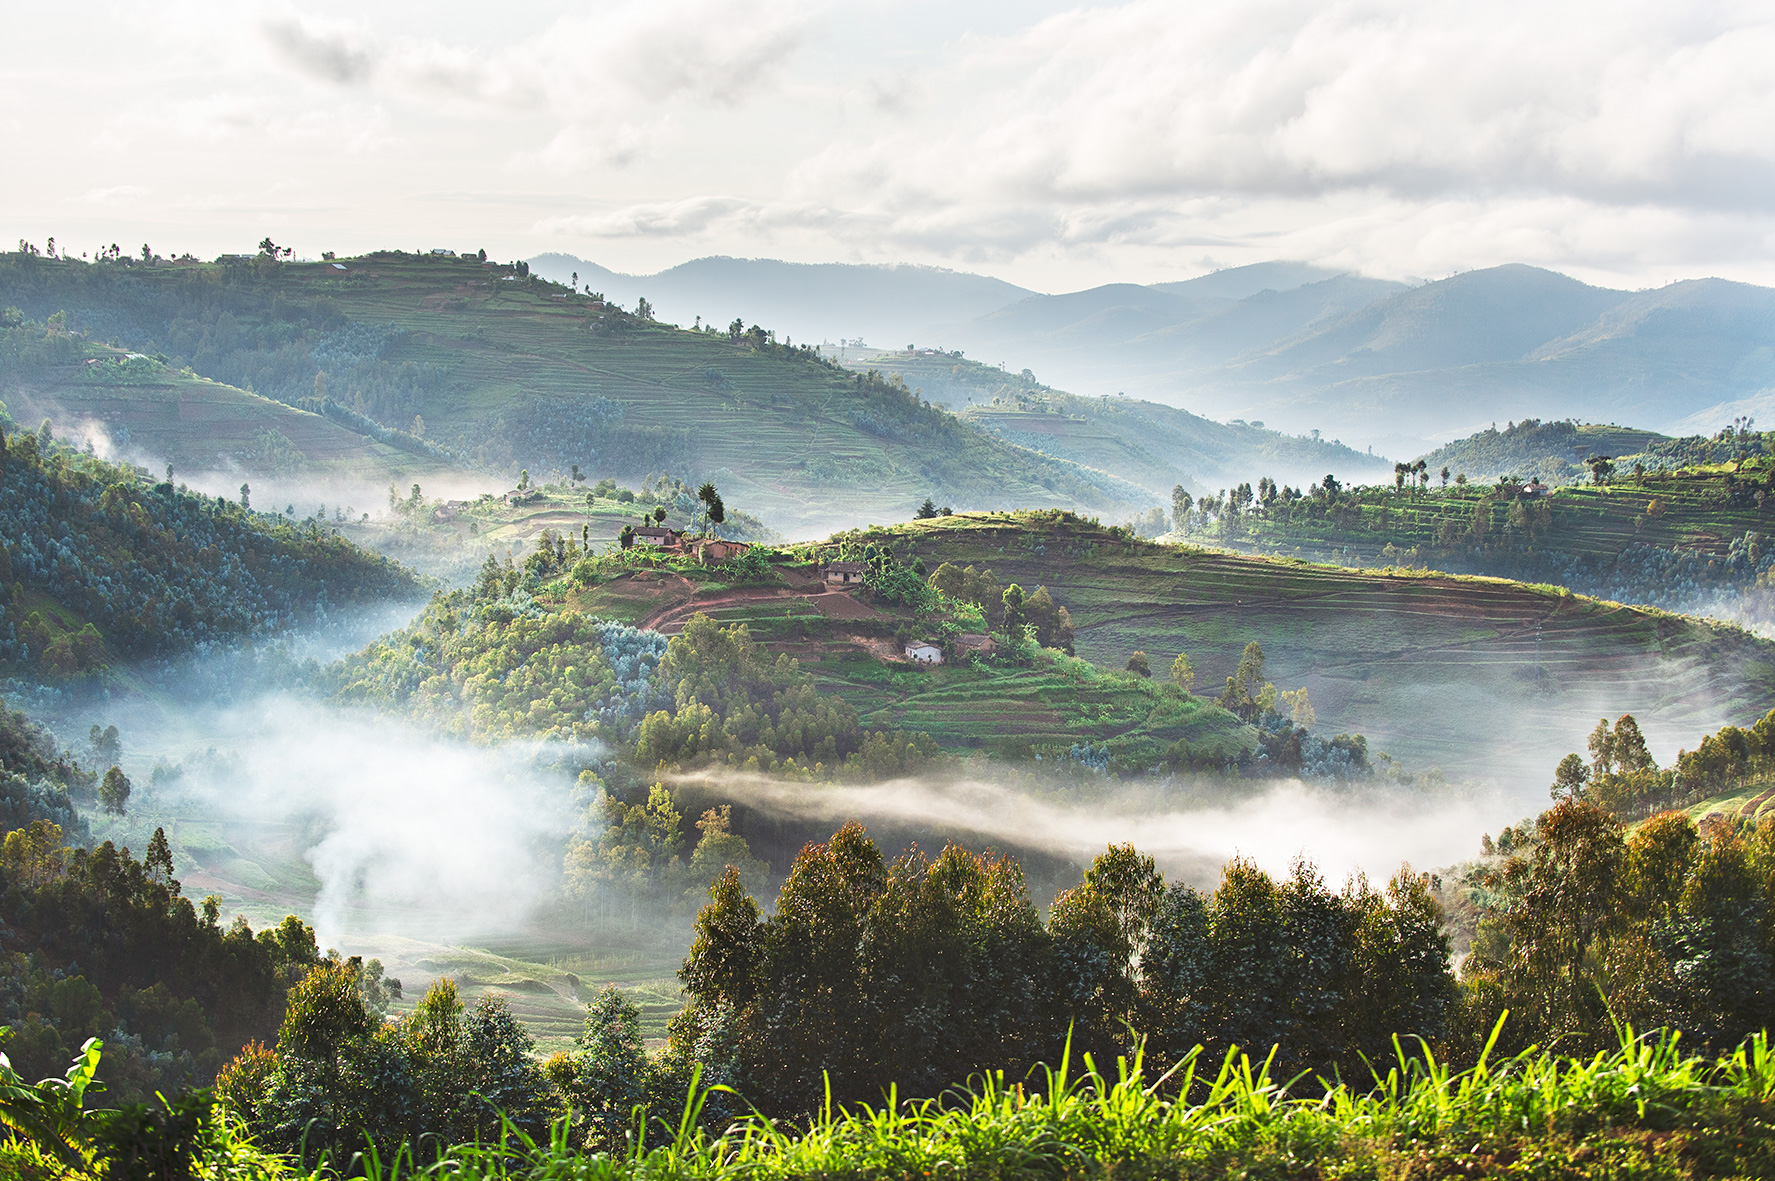 Landschaft in Ruanda, Bild aus Afrika erhältlich im Onlineshop